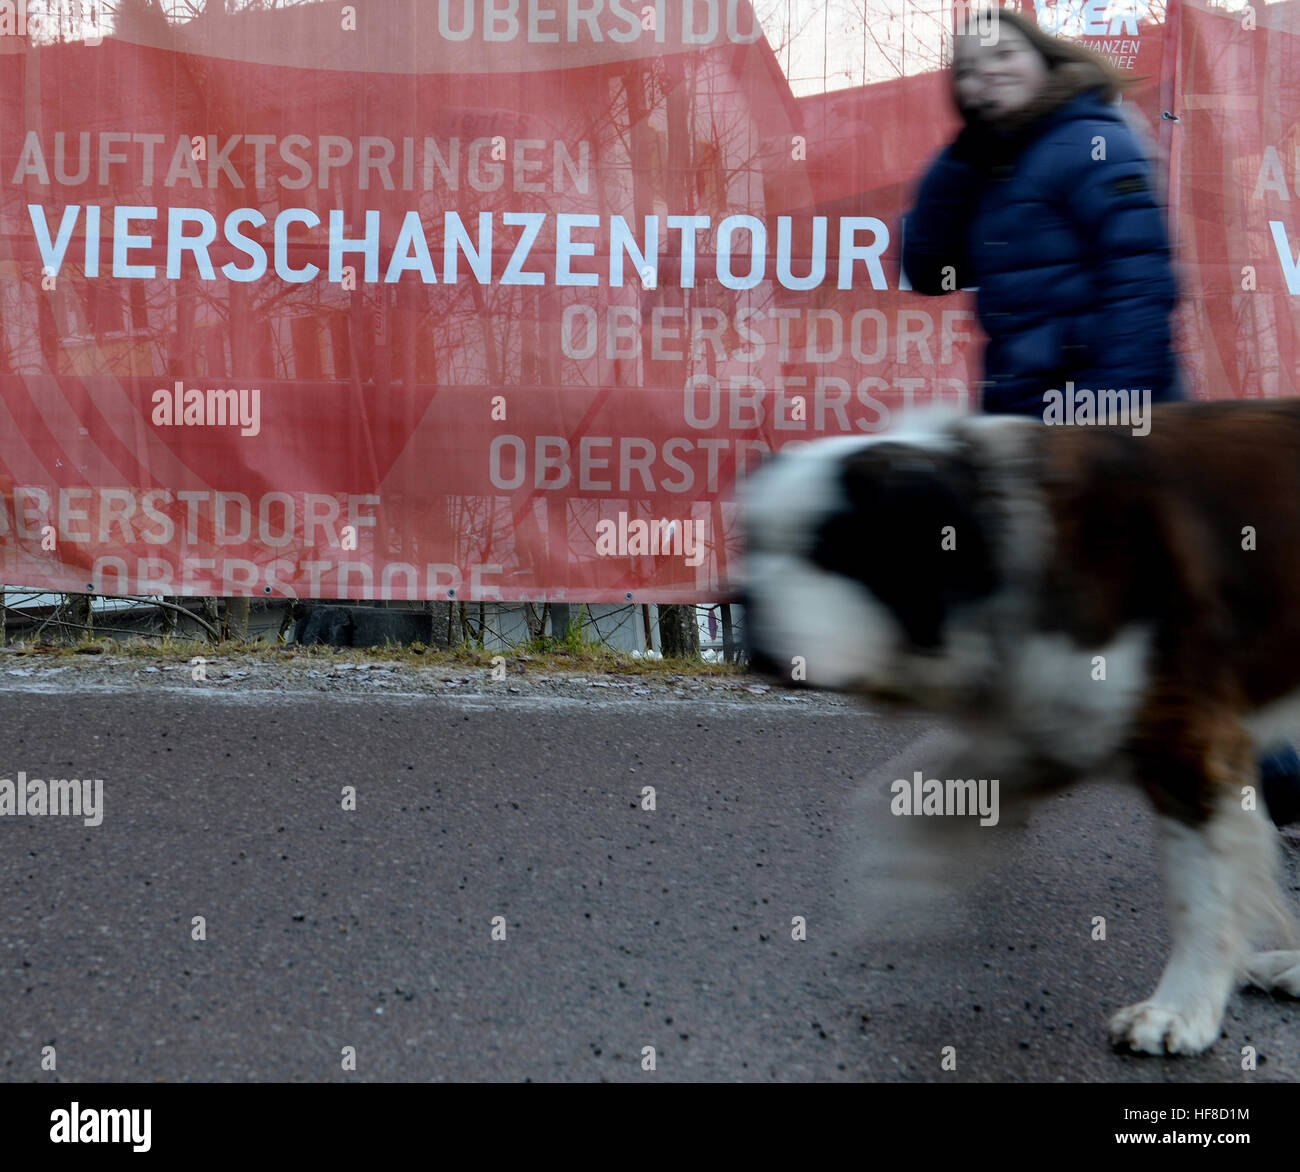 Oberstdorf, Alemania. 28 dic, 2016. Una mujer con un perro antes de la apertura de la 65ª cuatro colinas Torneo en Oberstdorf, Alemania, el 28 de diciembre de 2016. Foto: Angelika Warmuth/dpa/Alamy Live News Foto de stock